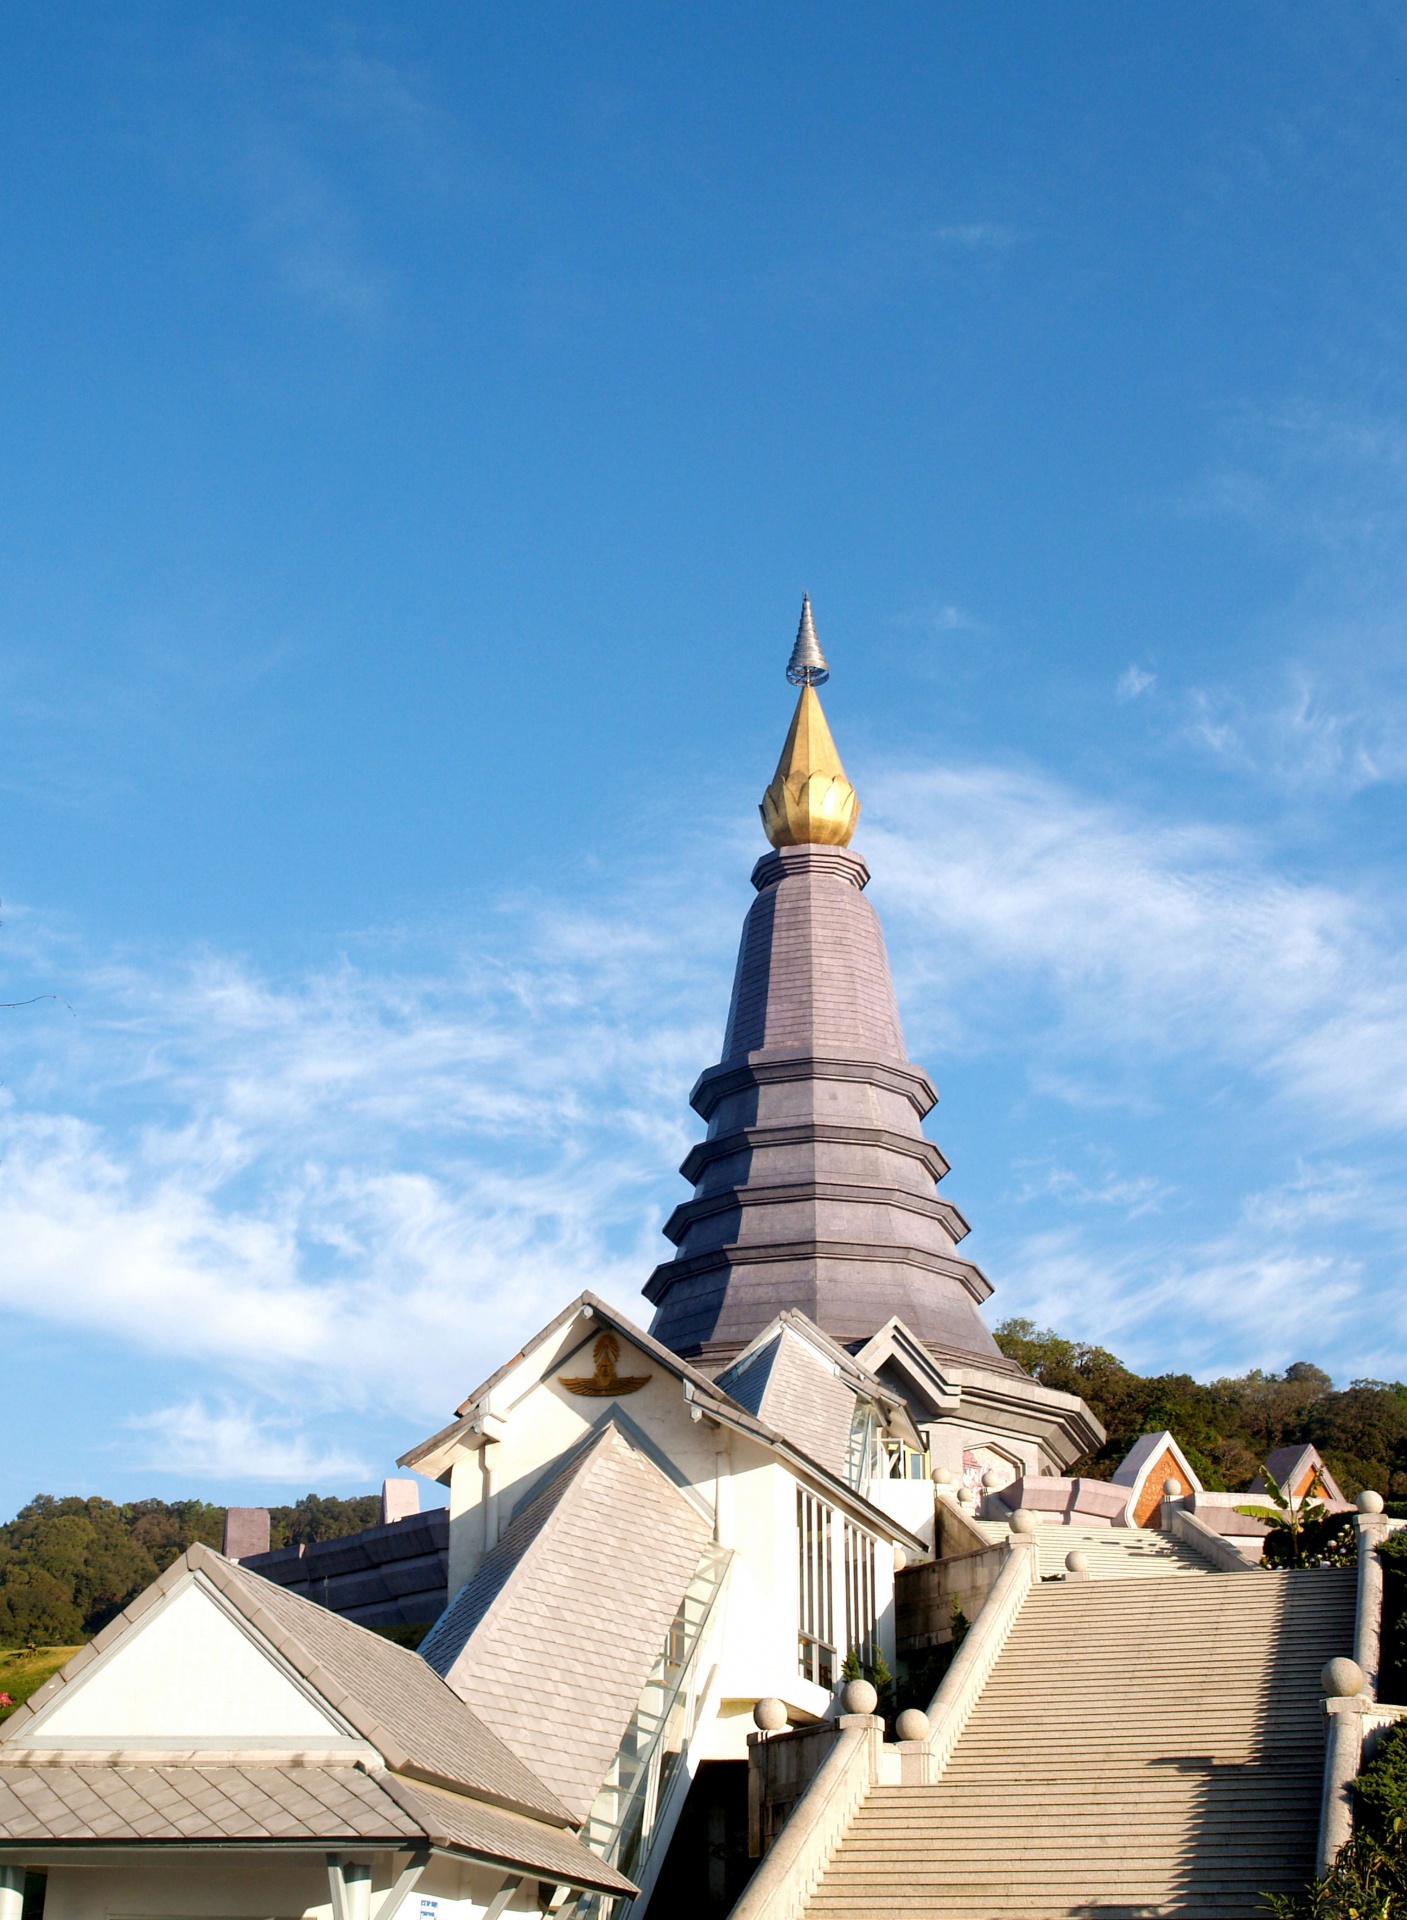 pagoda-doi-inthanon-chiang-mai-thailand-free-stock-photo-public